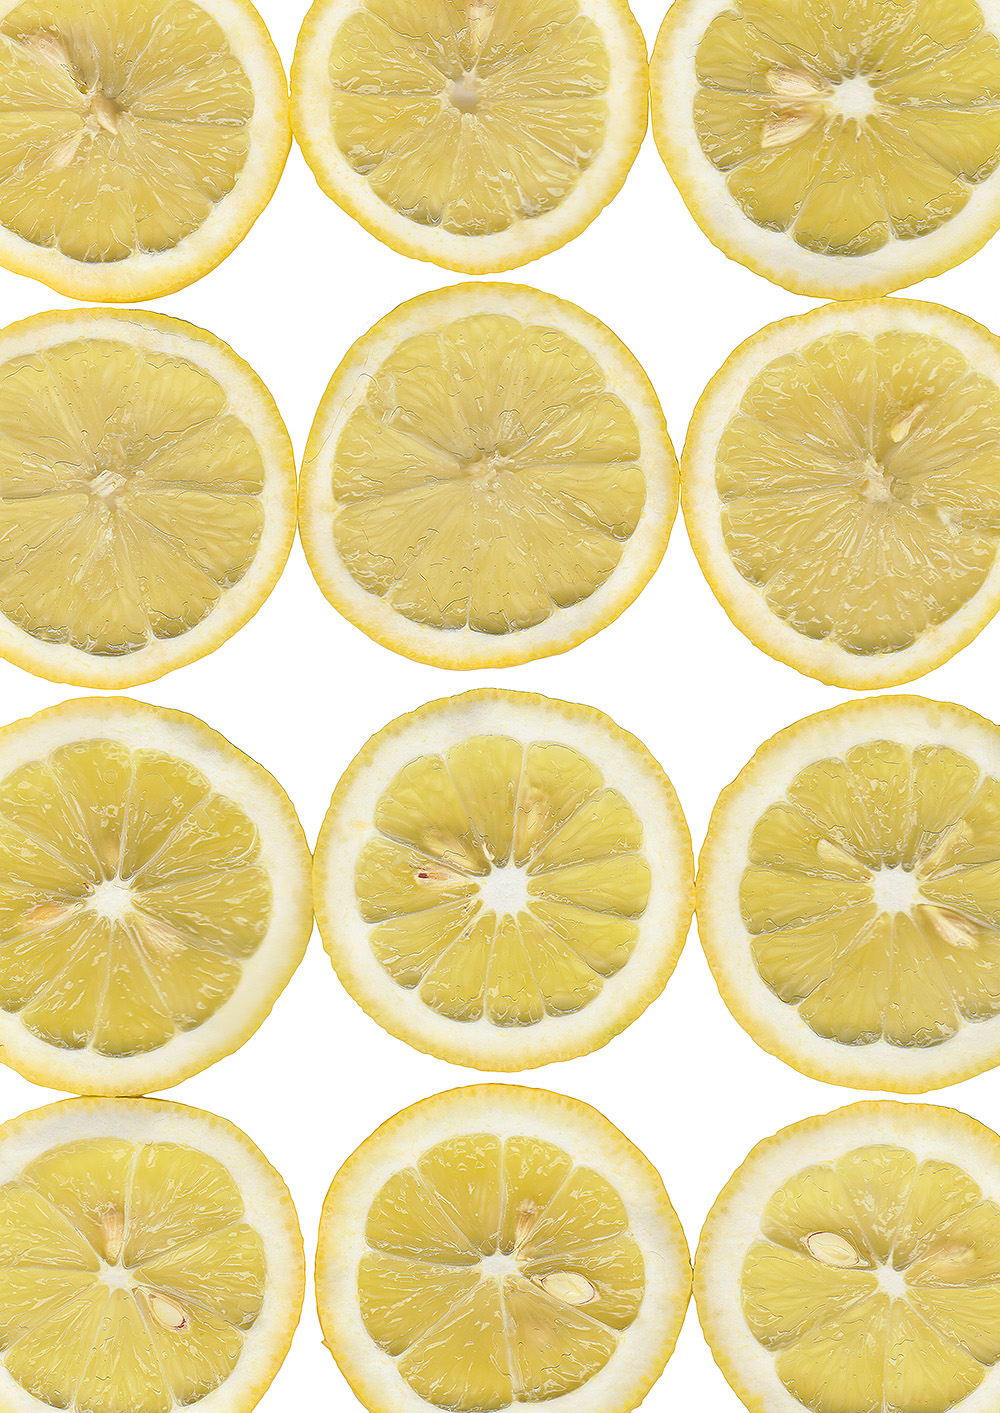 Retuschierter Scan von Zitronenscheiben